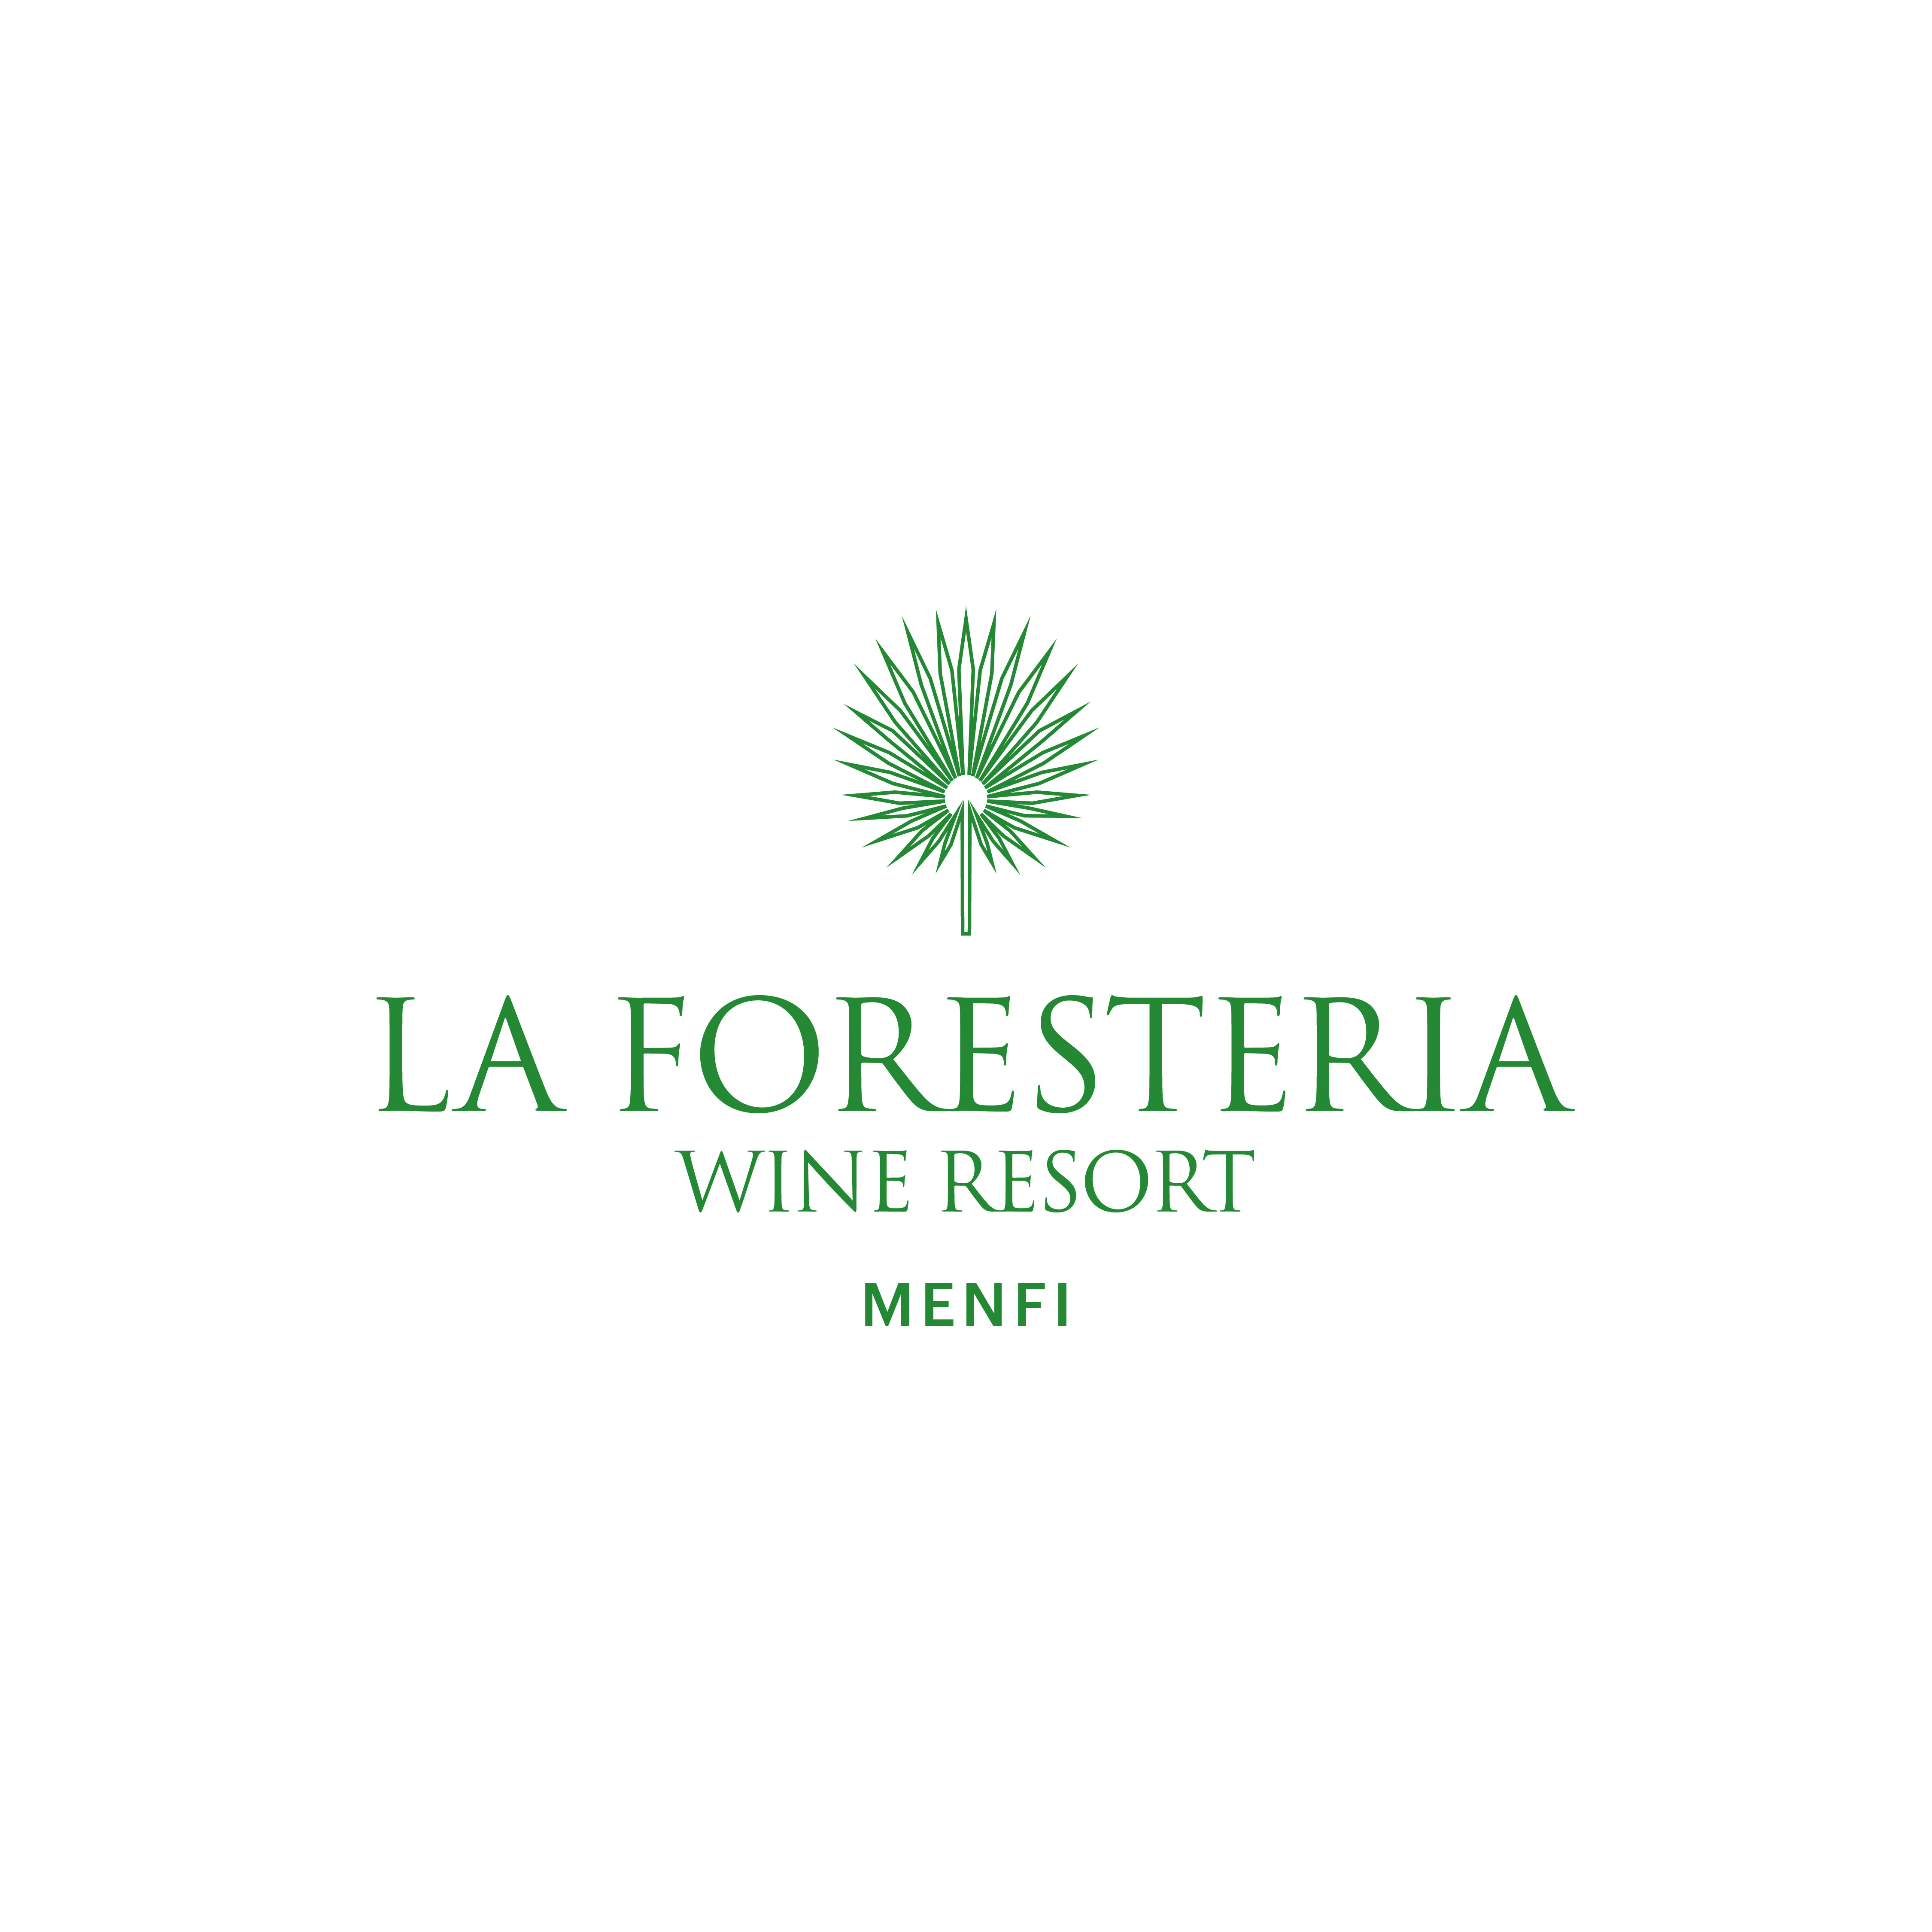 LA FORESTERIA - WINE RESORT - MENFI